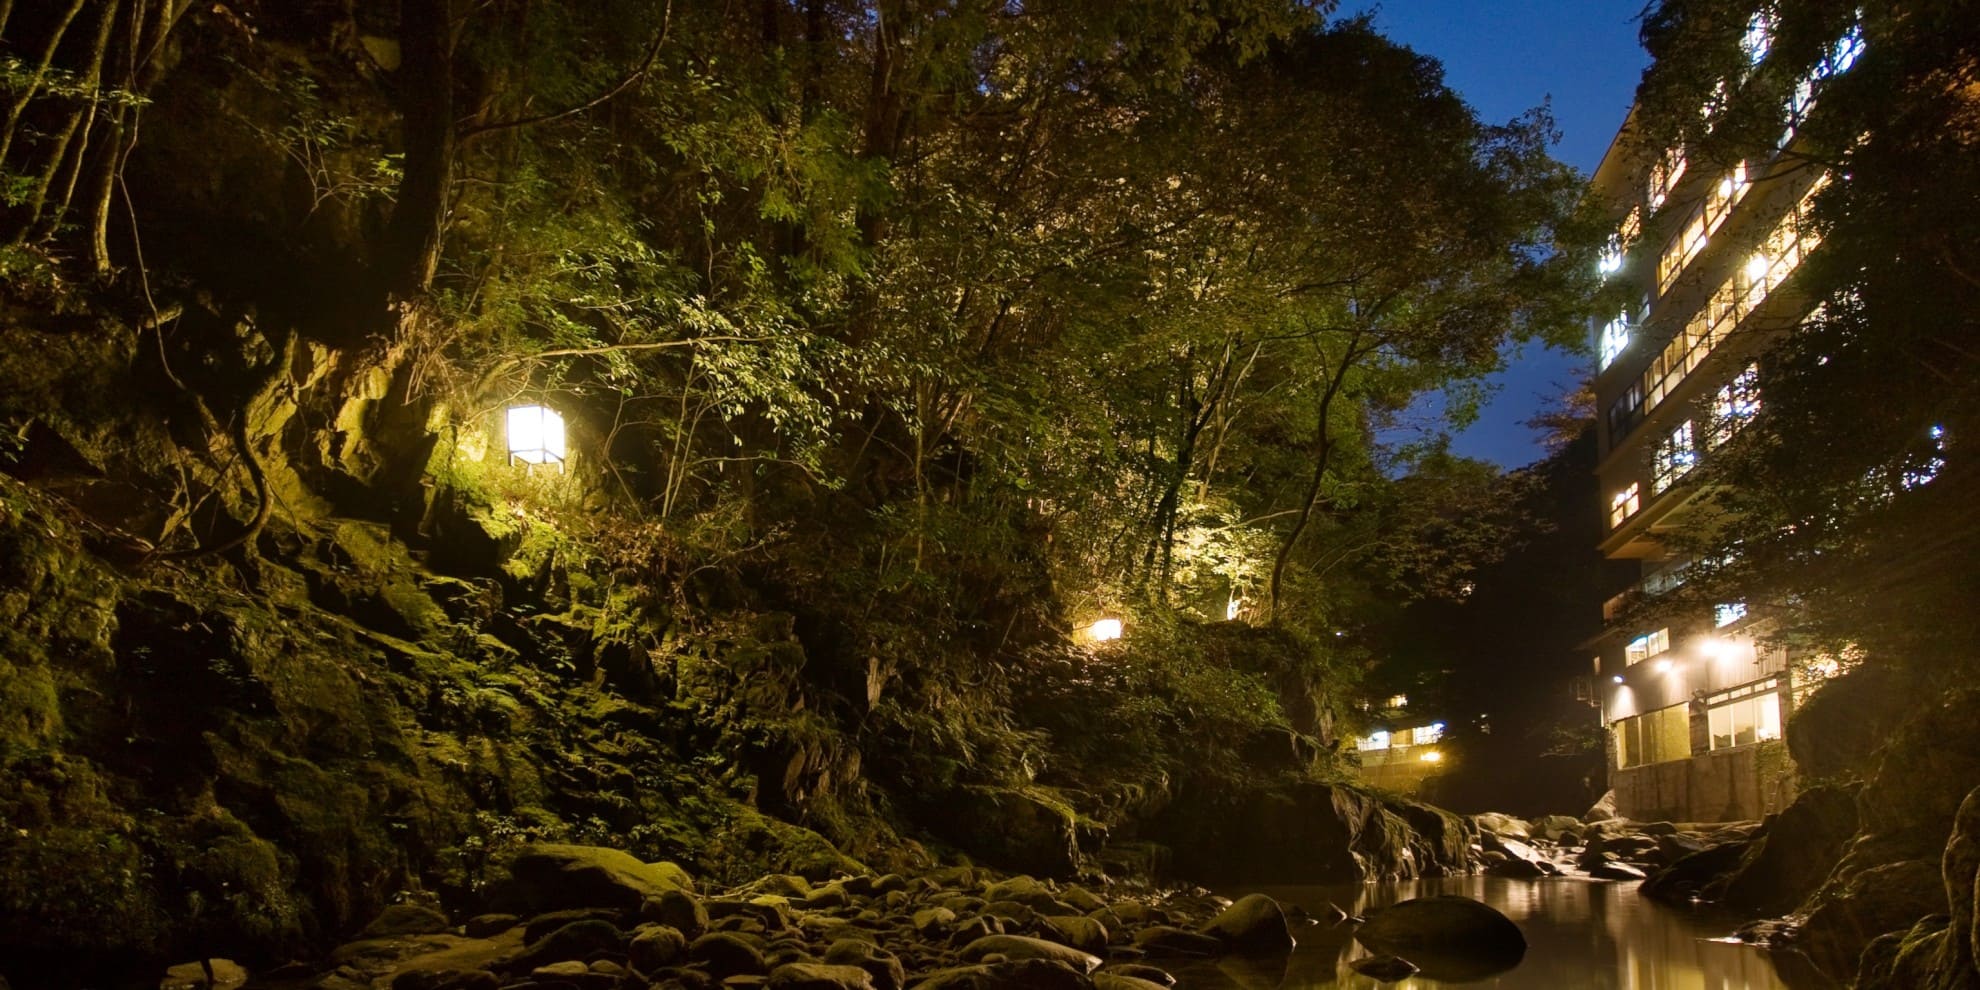 鈍川温泉 鈍川渓谷から見た美賀登の夜景